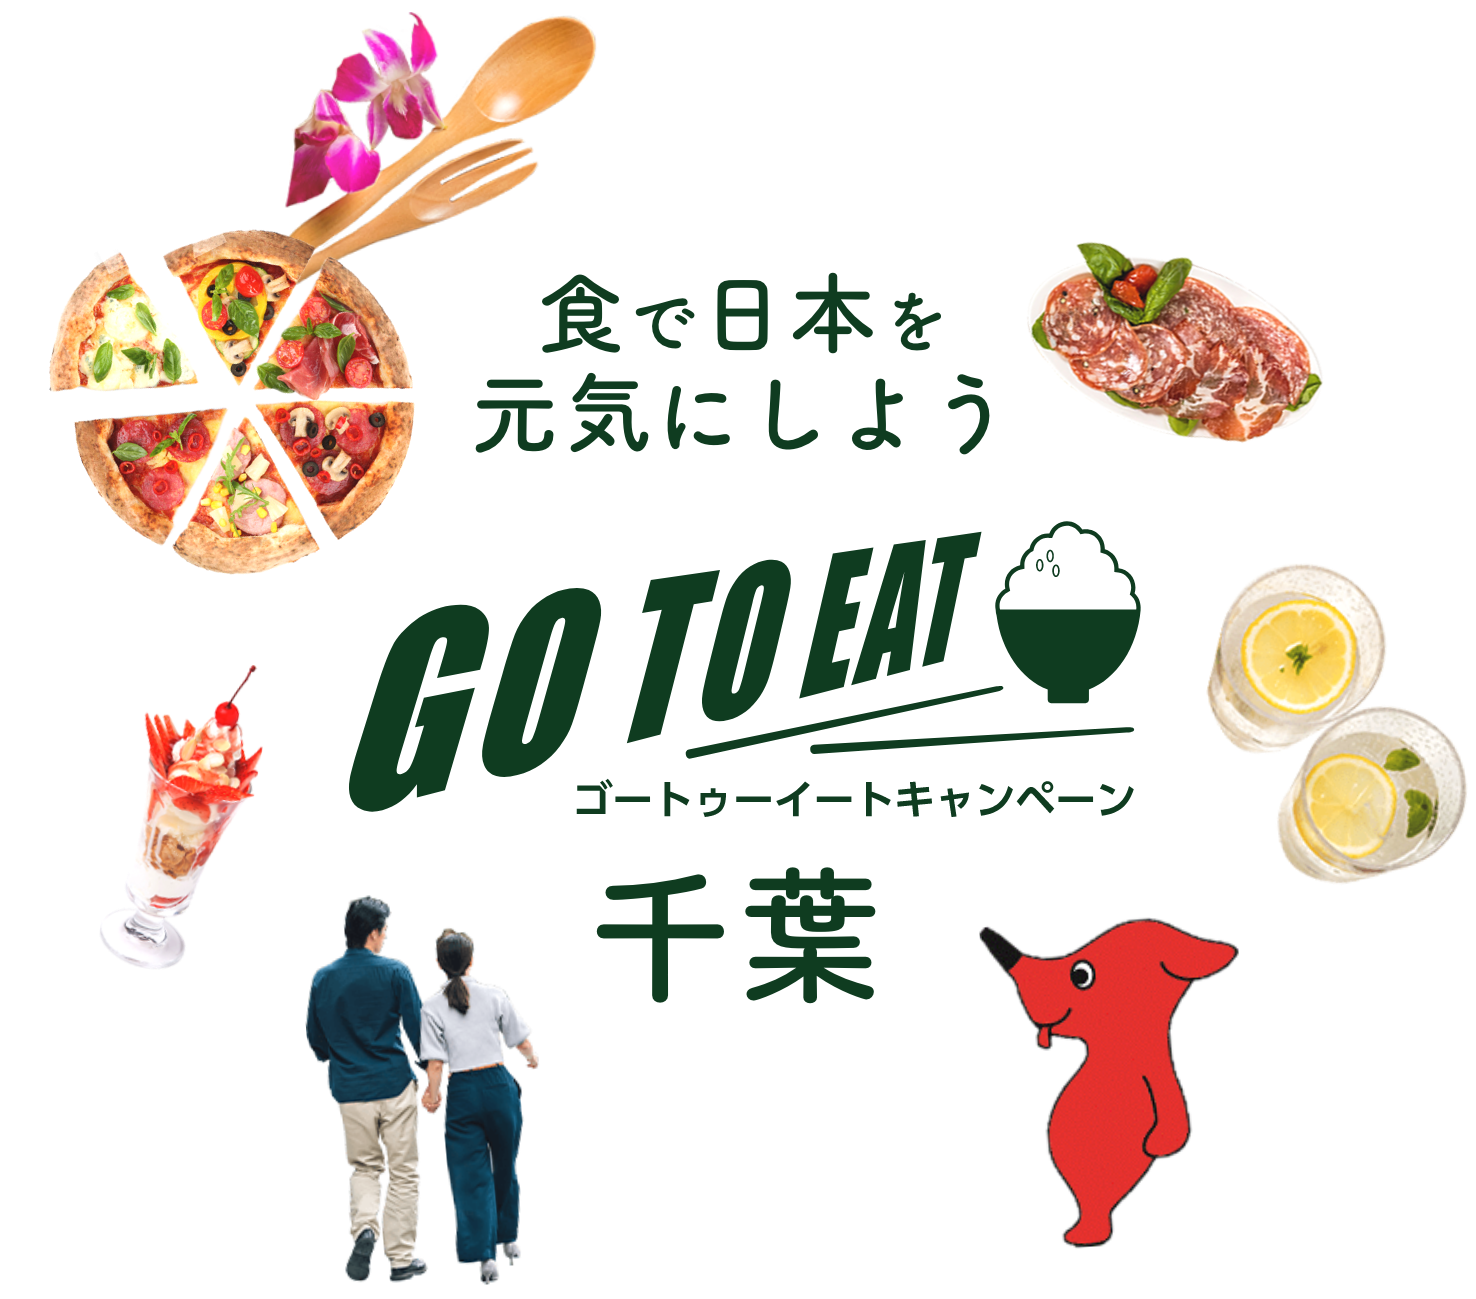 食で日本を元気にしよう GO TO EAT ゴートゥーイートキャンペーン千葉